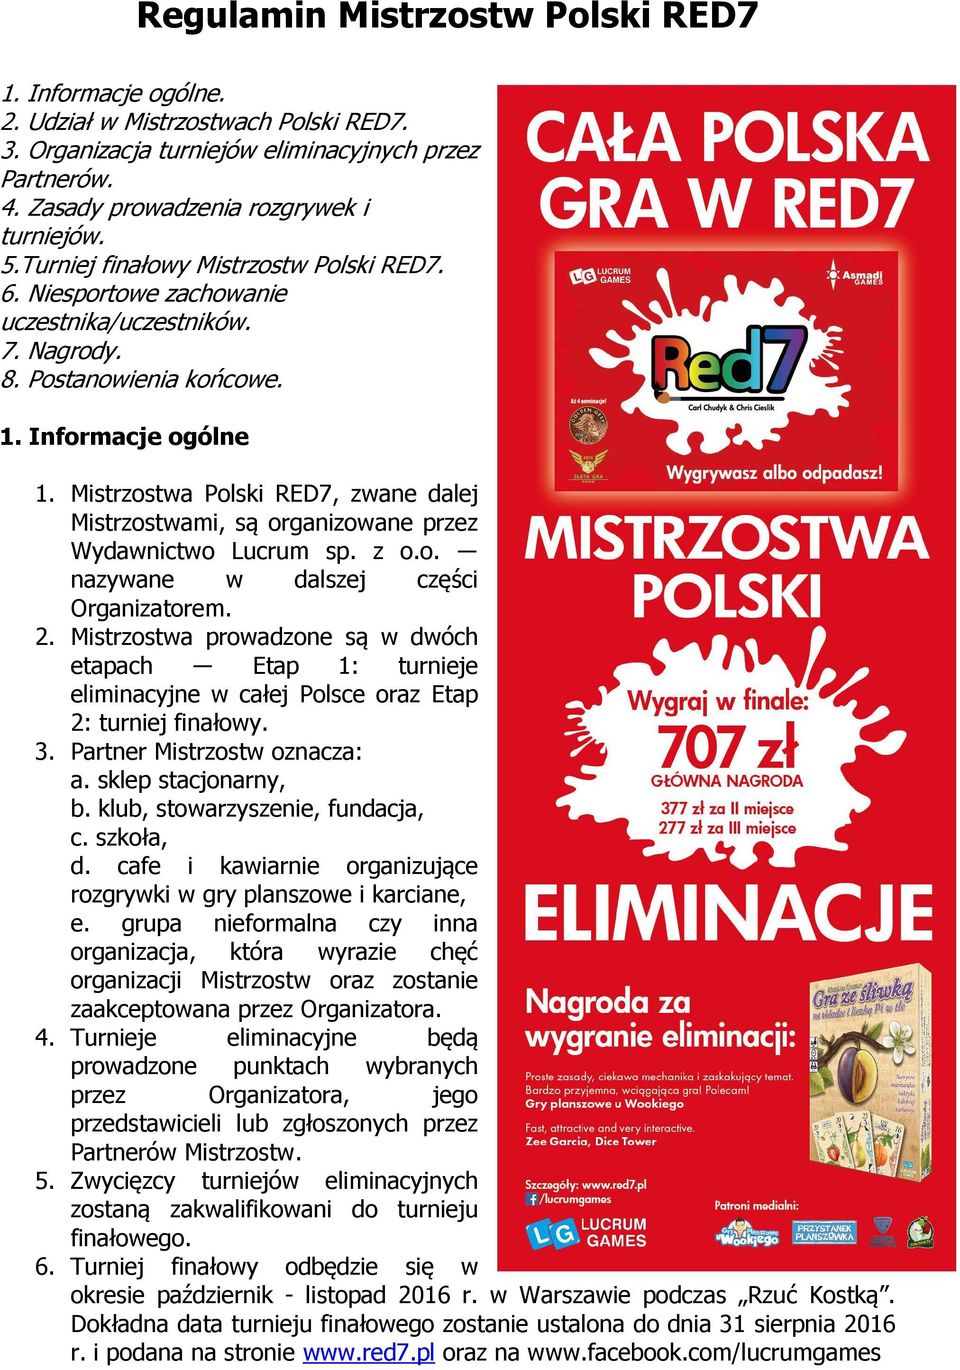 Mistrzostwa Polski RED7, zwane dalej Mistrzostwami, są organizowane przez Wydawnictwo Lucrum sp. z o.o. nazywane w dalszej części Organizatorem. 2.